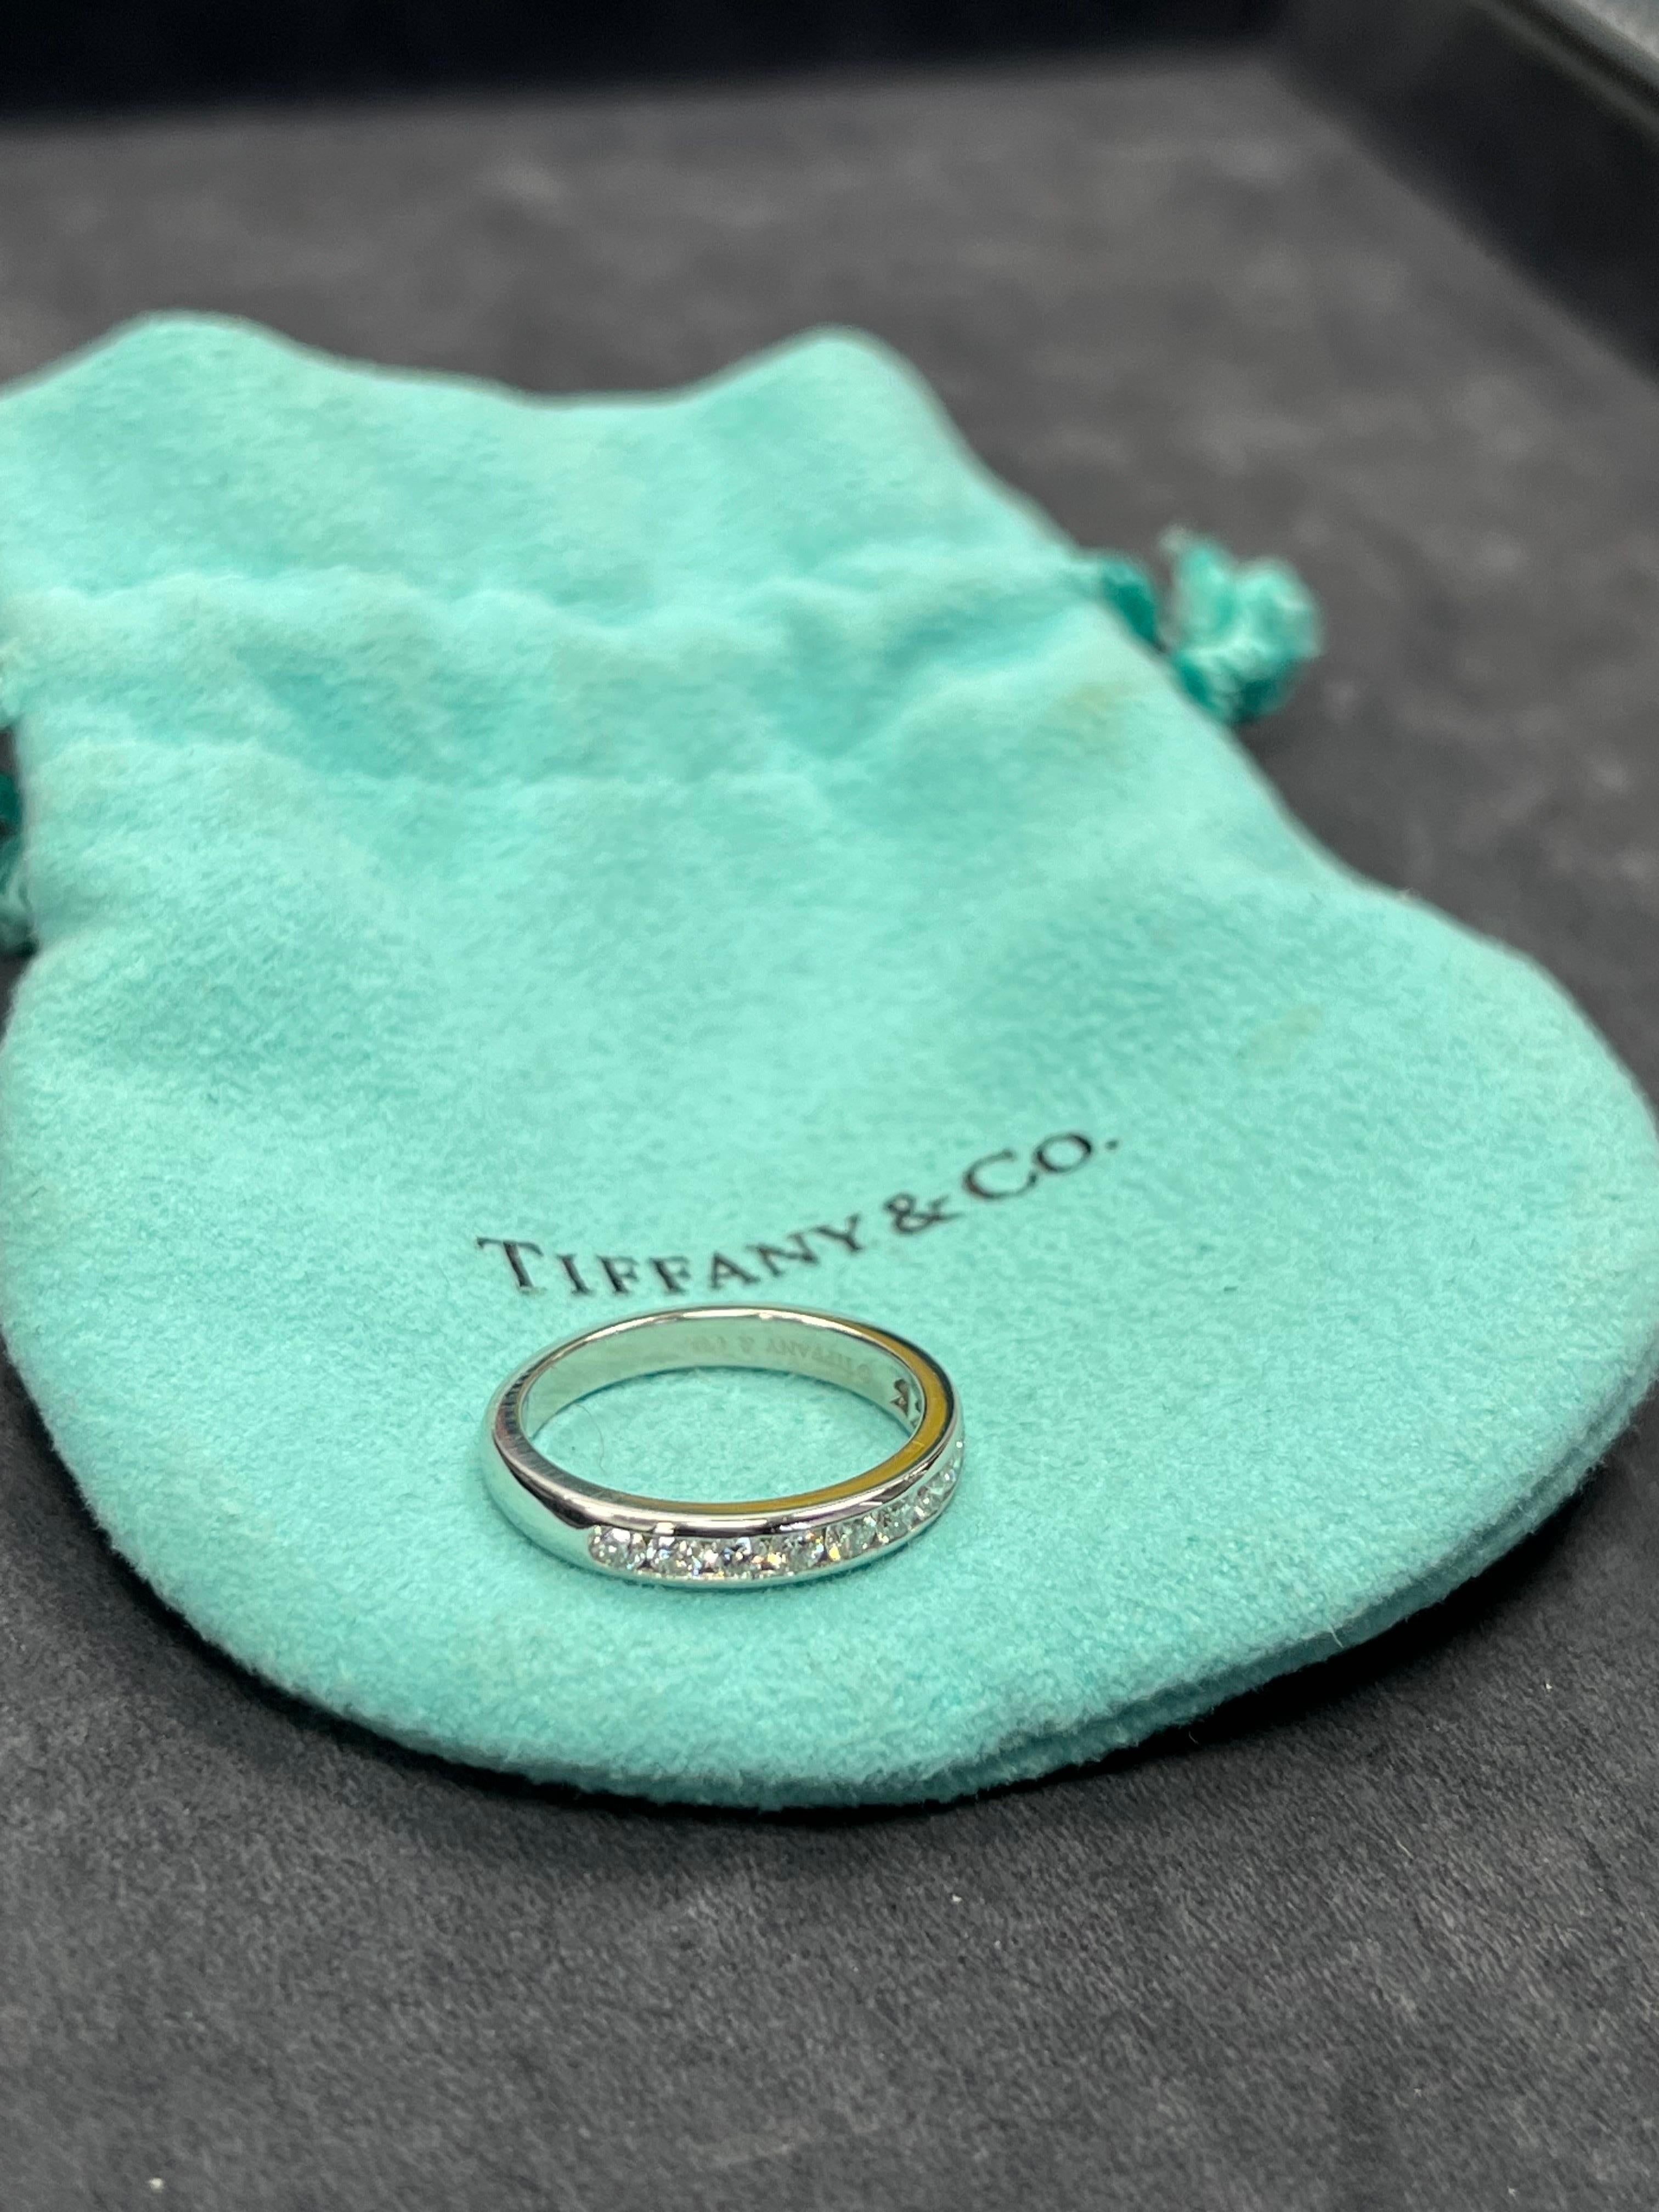 Authentisches Tiffany & Company Platinband, besetzt mit 11 farblosen runden Brillanten mit einem Gesamtgewicht von 0,17 Karat. 

Die Ringgröße ist 5,5 und das Gesamtgewicht beträgt 4,7 Gramm. Inklusive Original-Etui. Keine Schachtel, keine